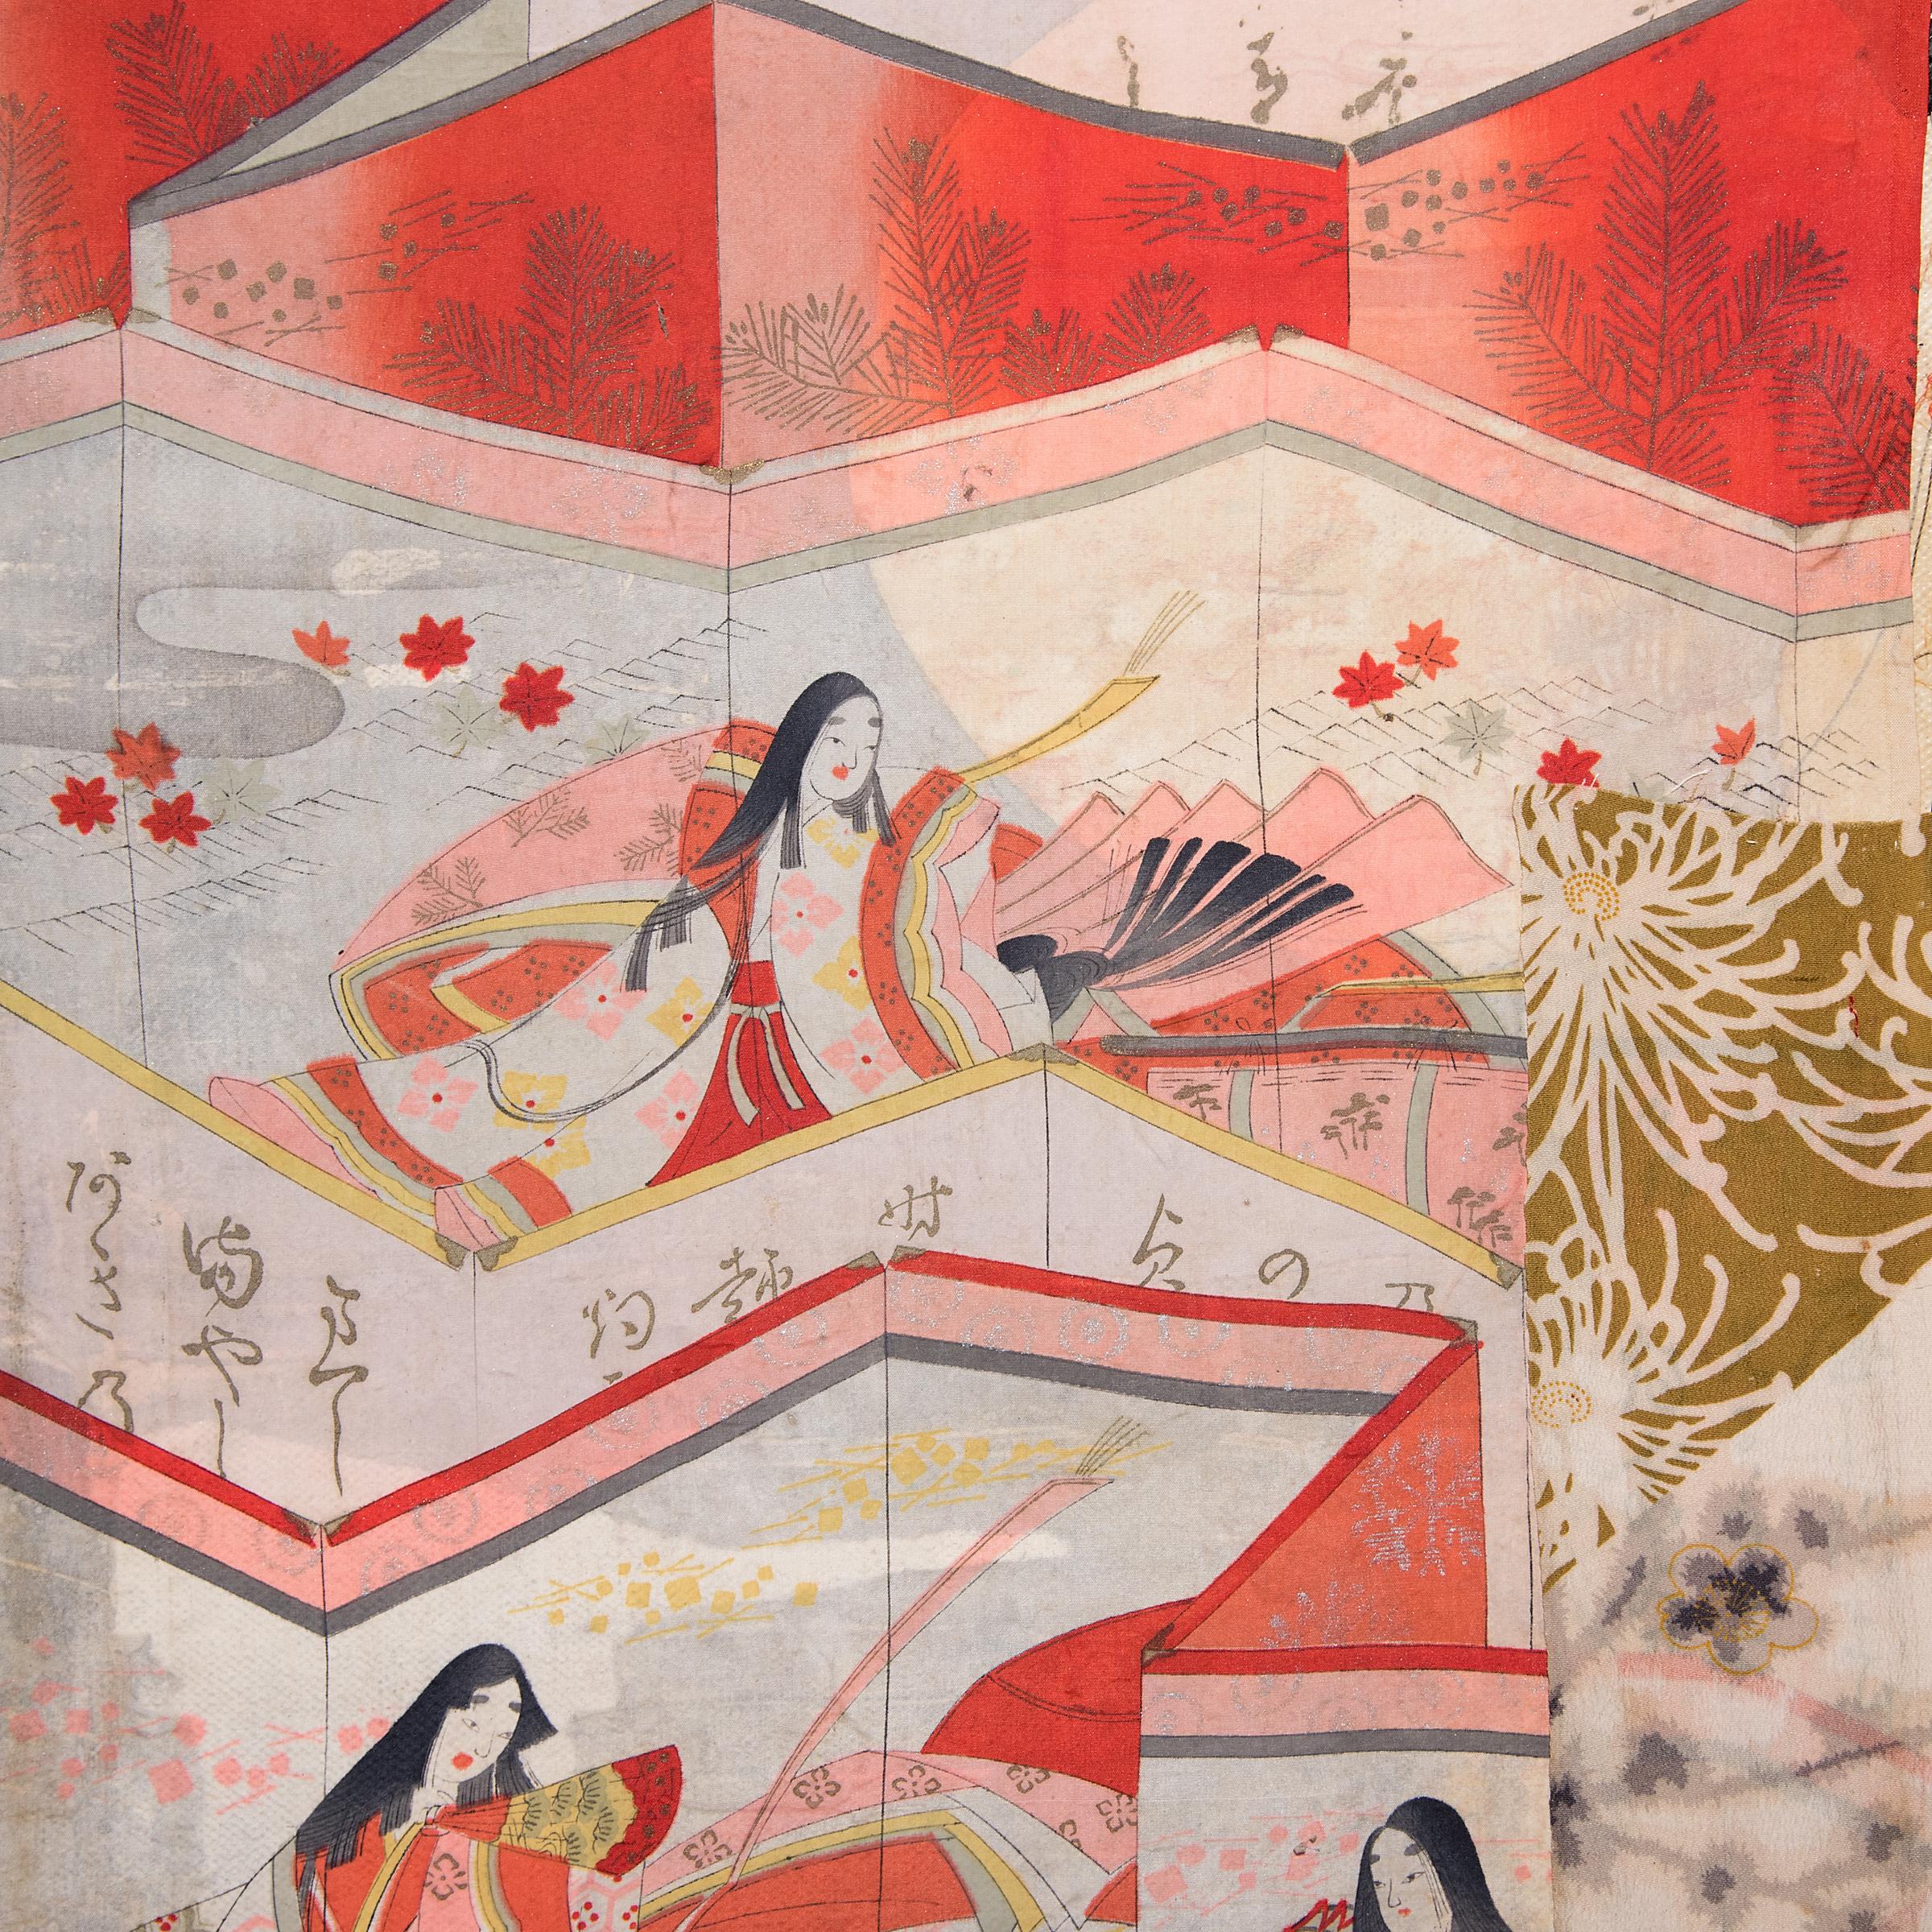 L'artiste Michael Thompson, basé à Chicago, crée des compositions uniques d'éléments peints abstraits et un collage d'éphémères asiatiques vintage - y compris des fragments de tissu, des rouleaux, des dessins et des livres collectés au cours de ses